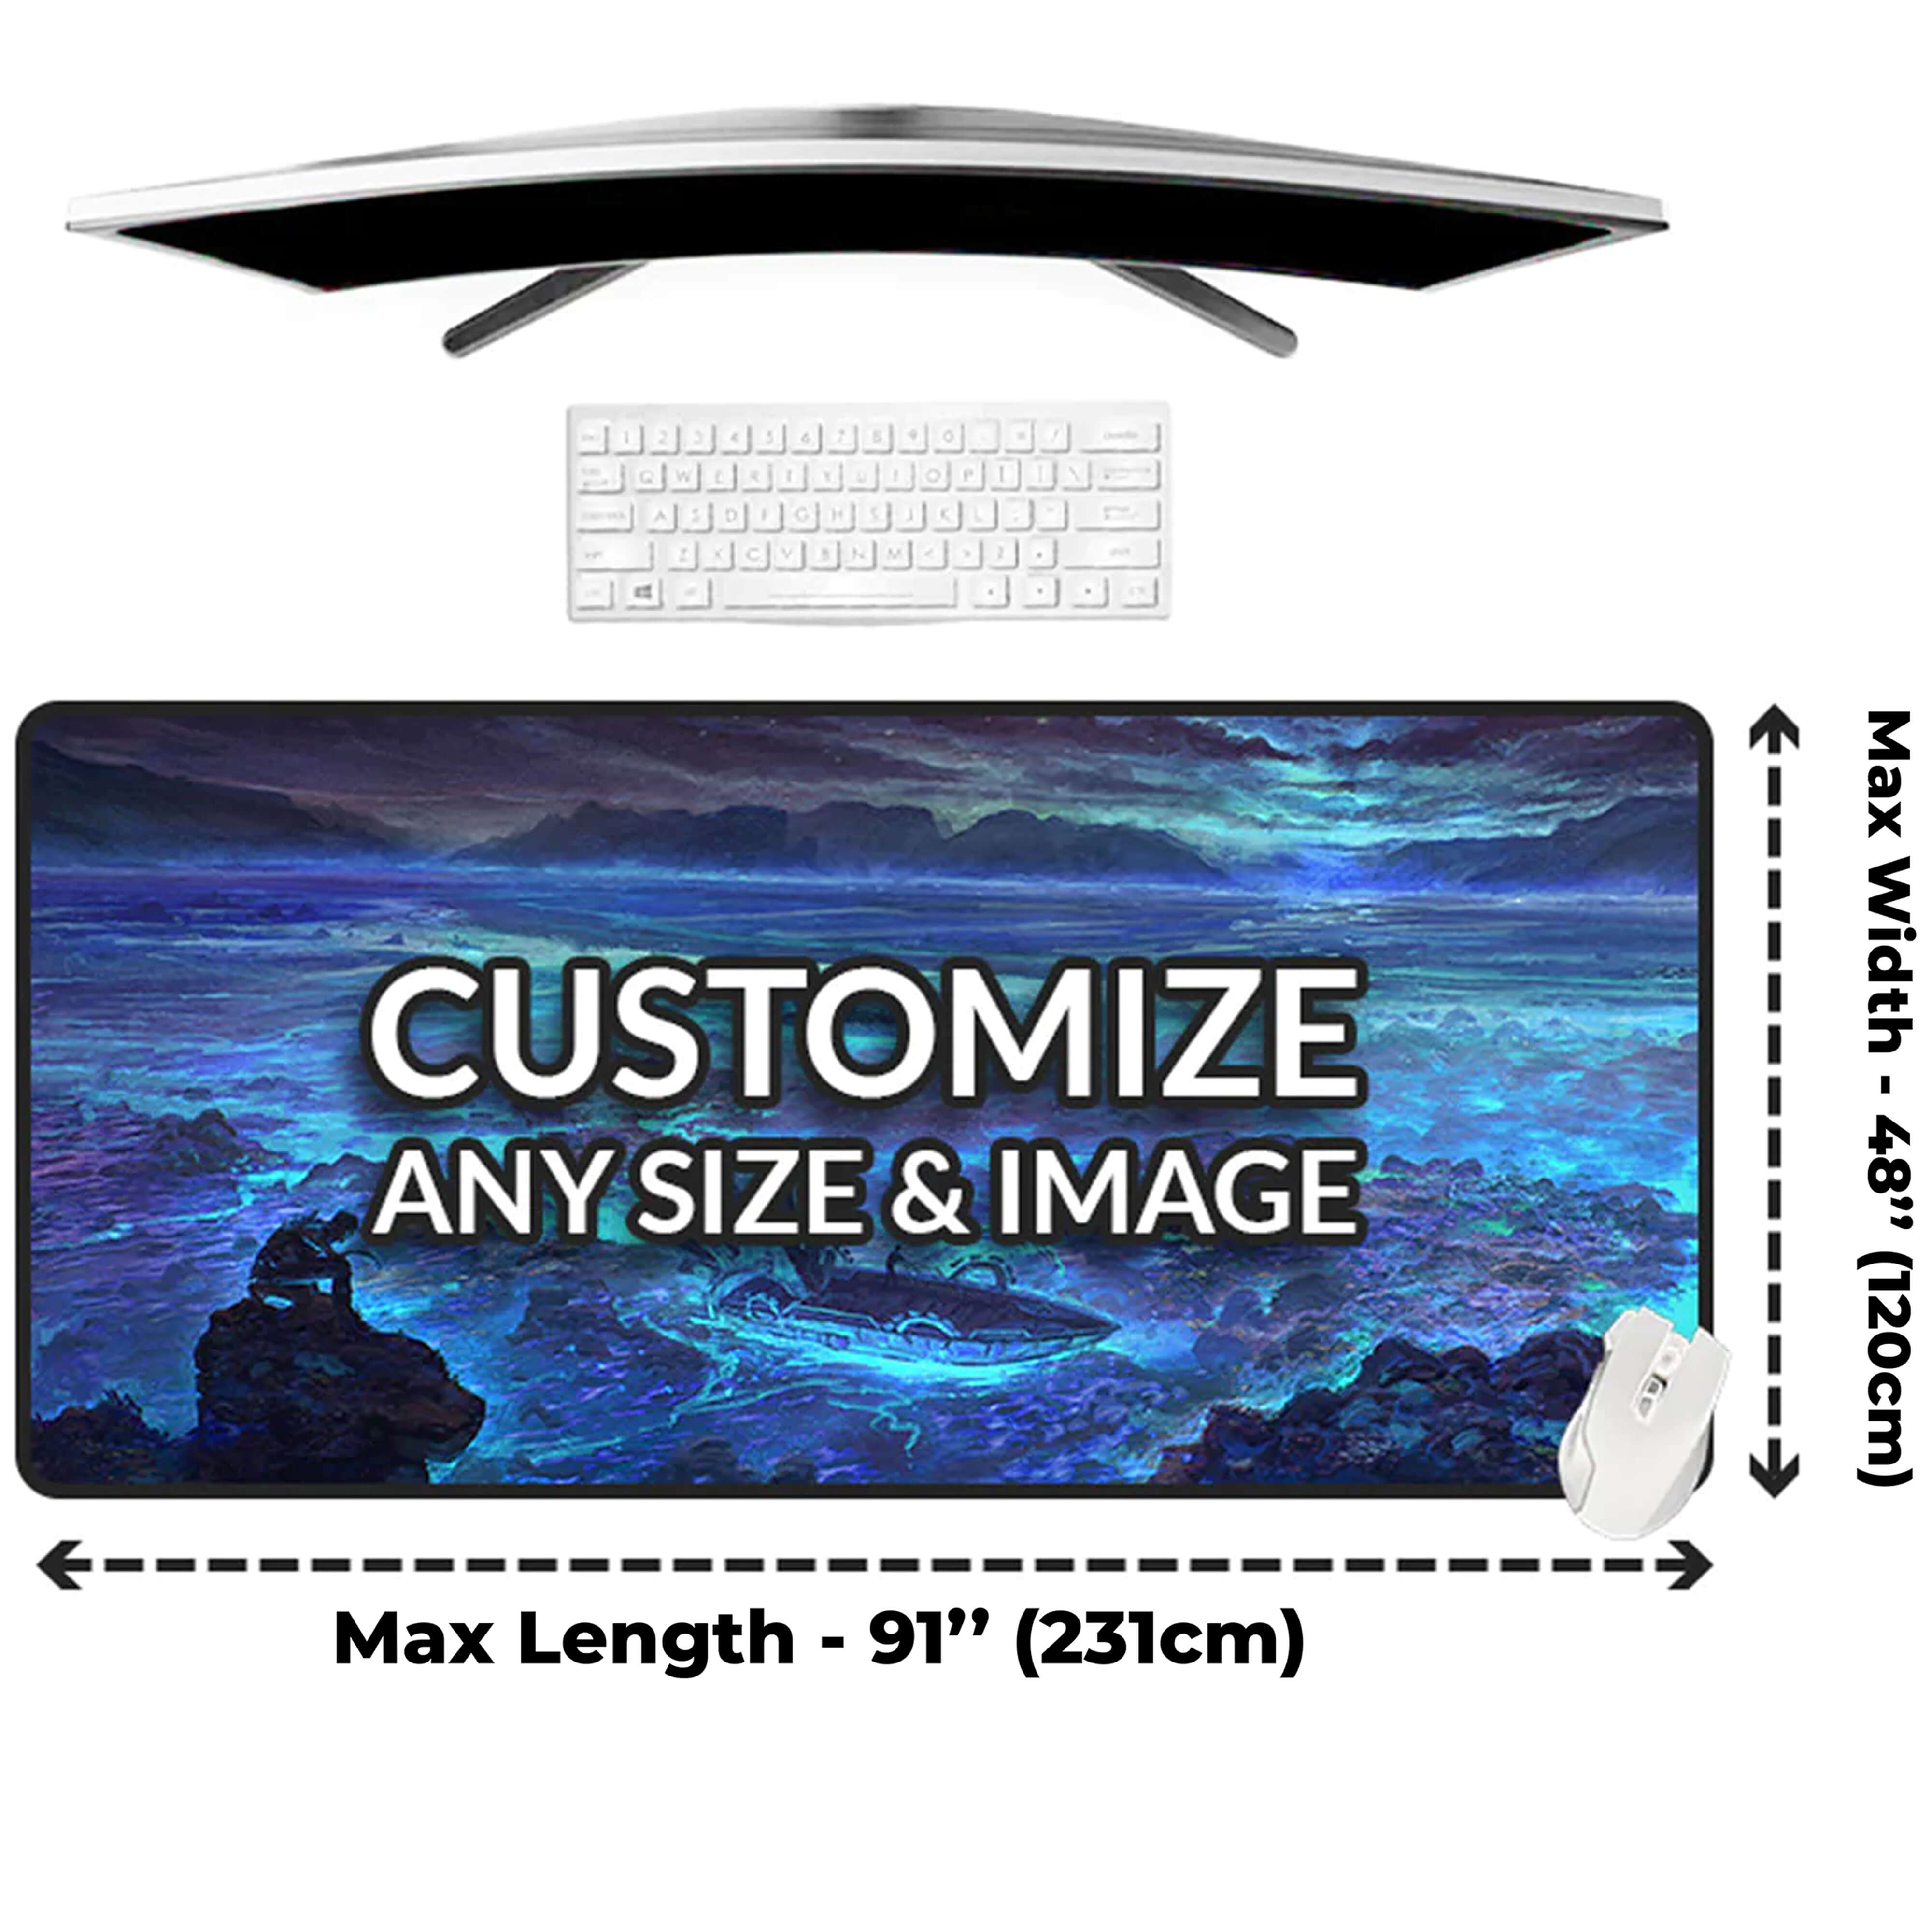 COUNTER MAT: 27 Long x 12 Wide x 1/8 thick display mat